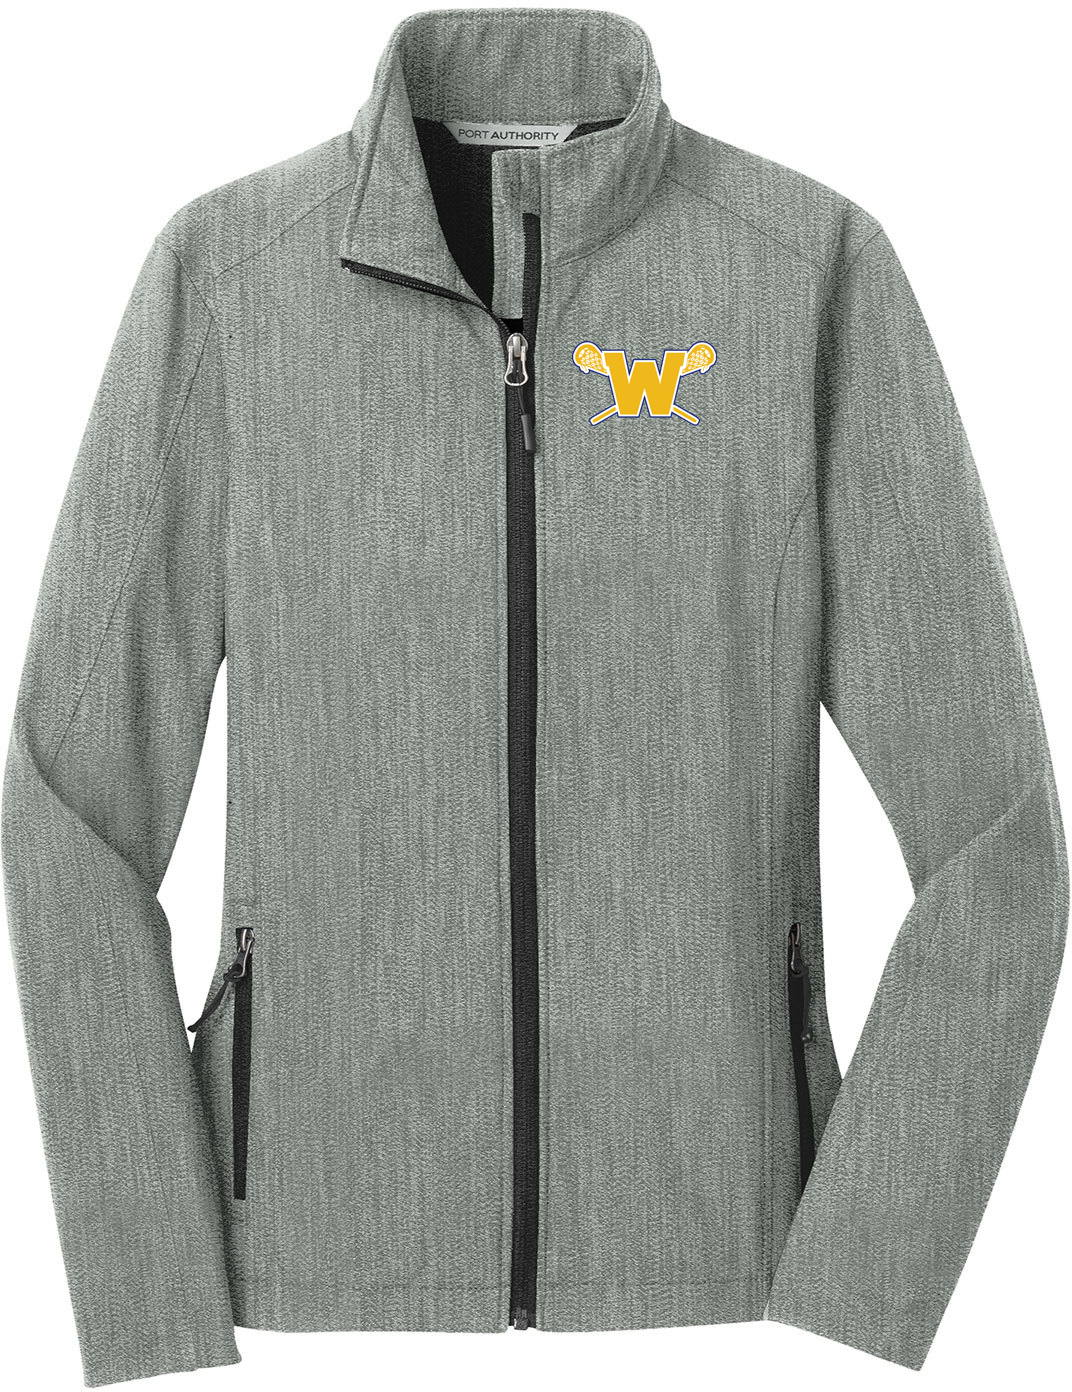 Webster Lacrosse Pearl Grey Women's Soft Shell Jacket